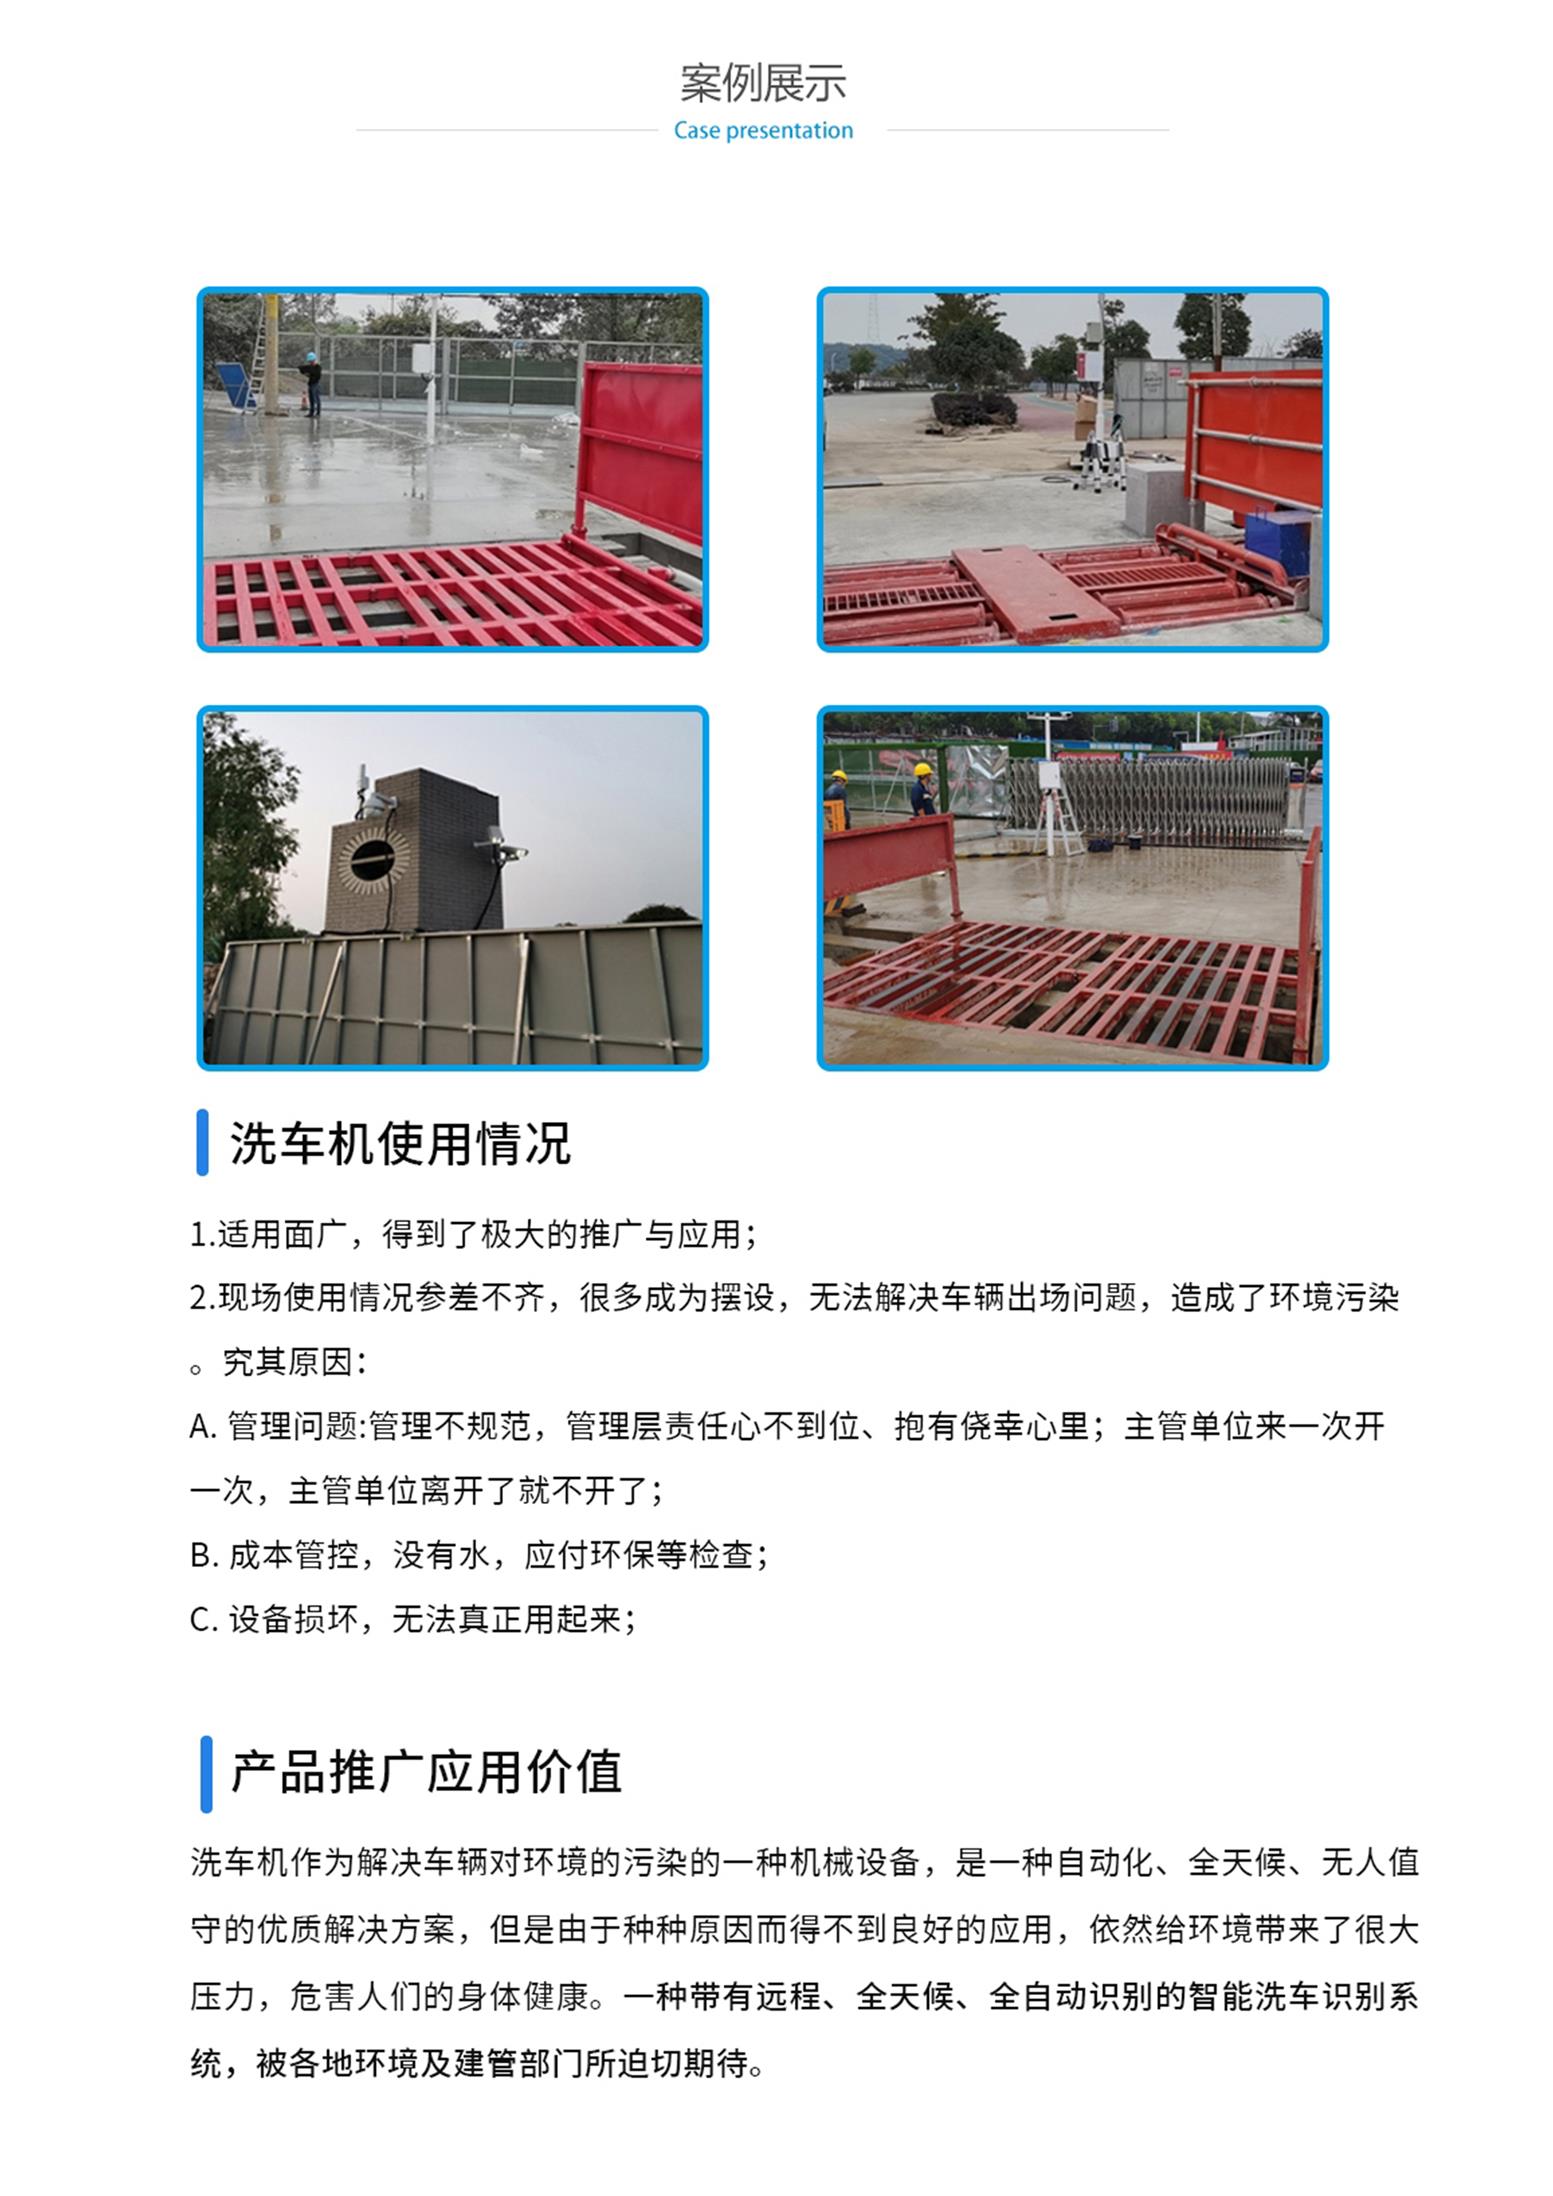 广州上海车辆冲洗系统